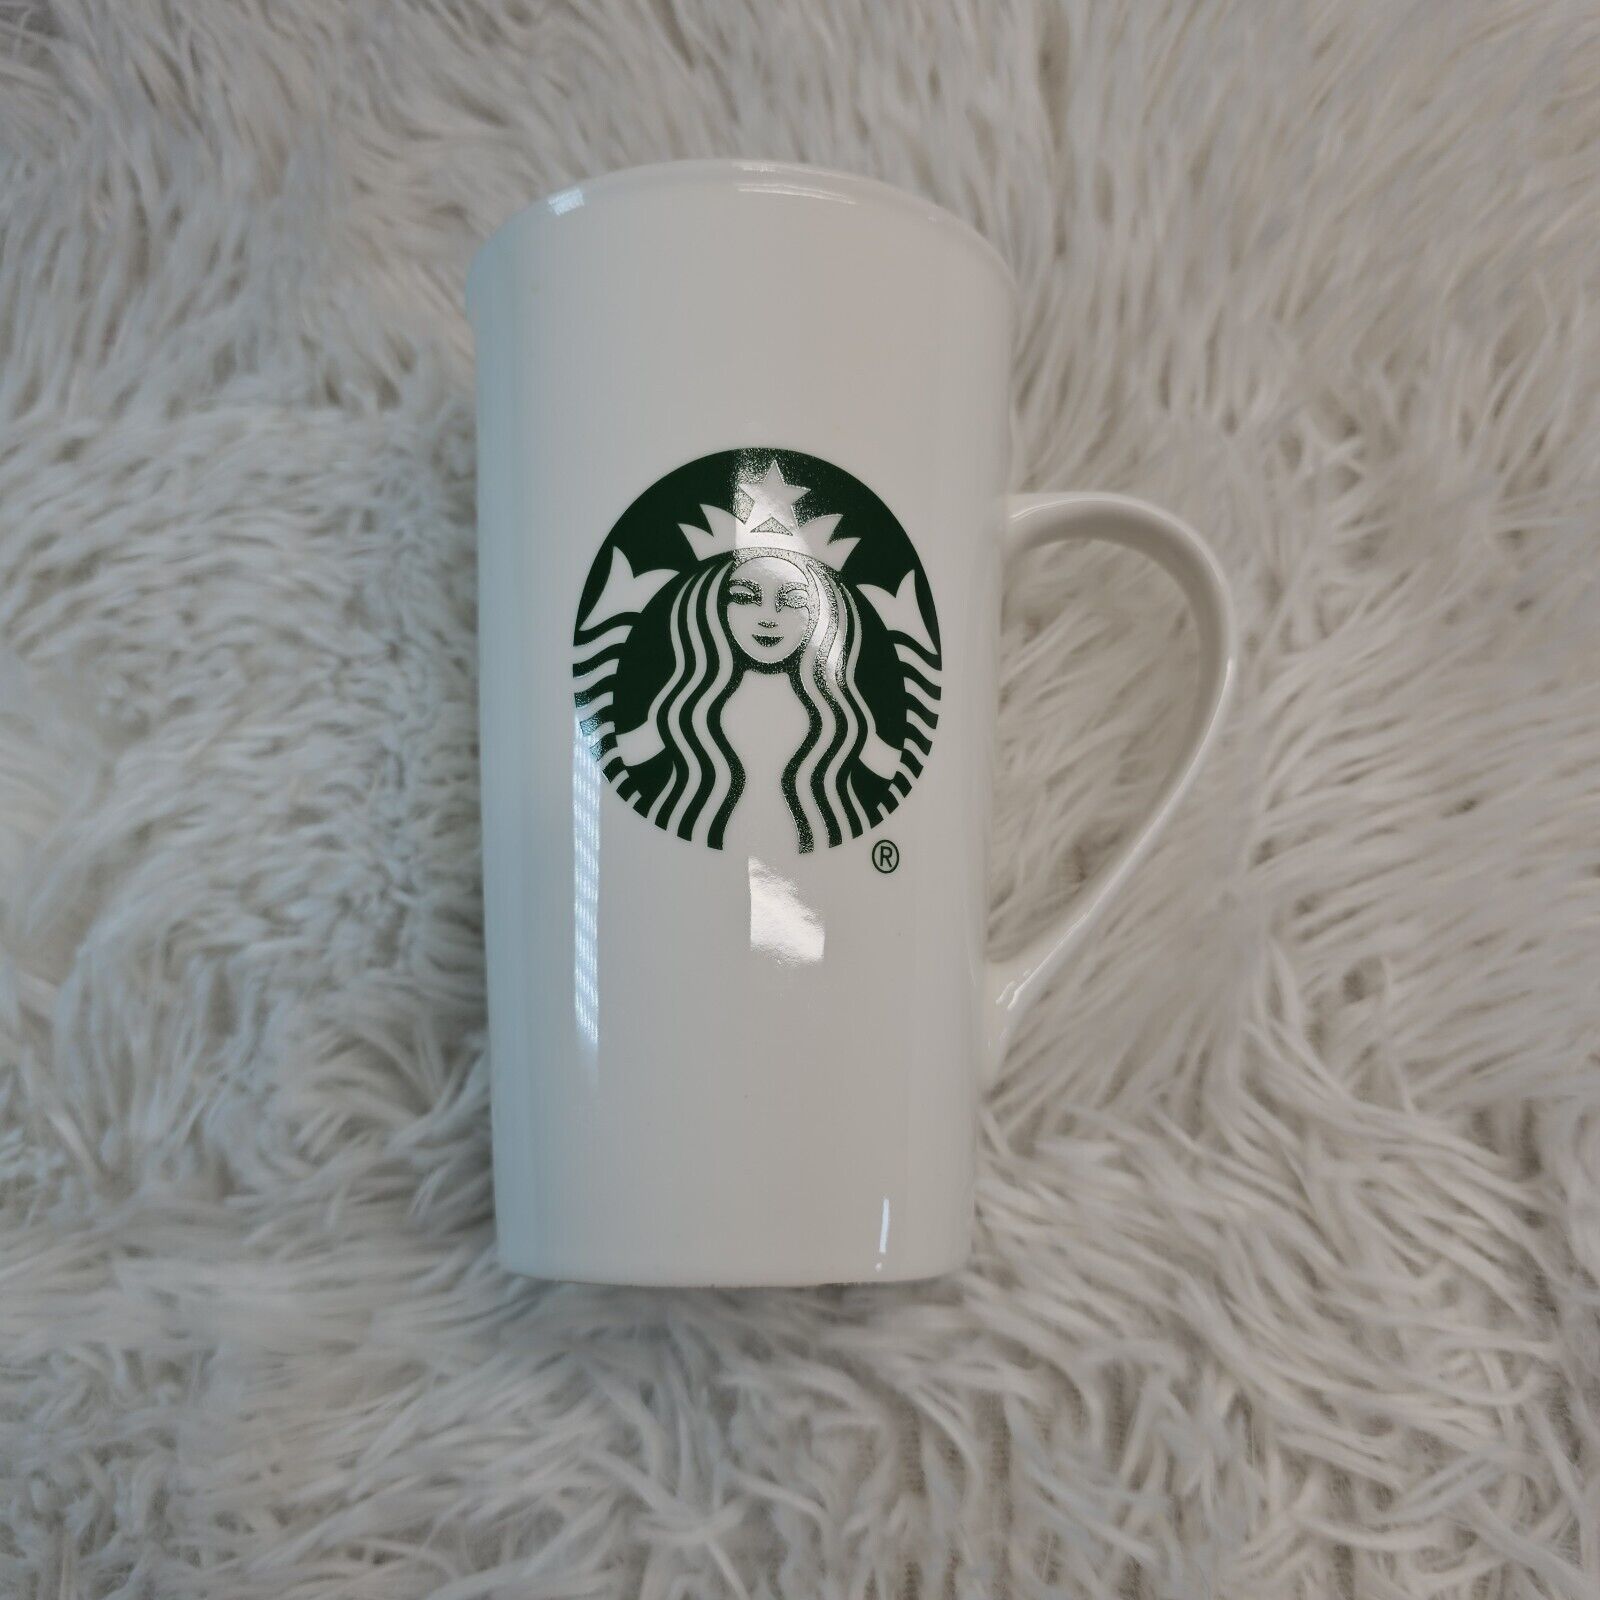 Starbucks 16 oz 2015 Tall White Coffee Latte Tea Mug Green Mermaid Logo 